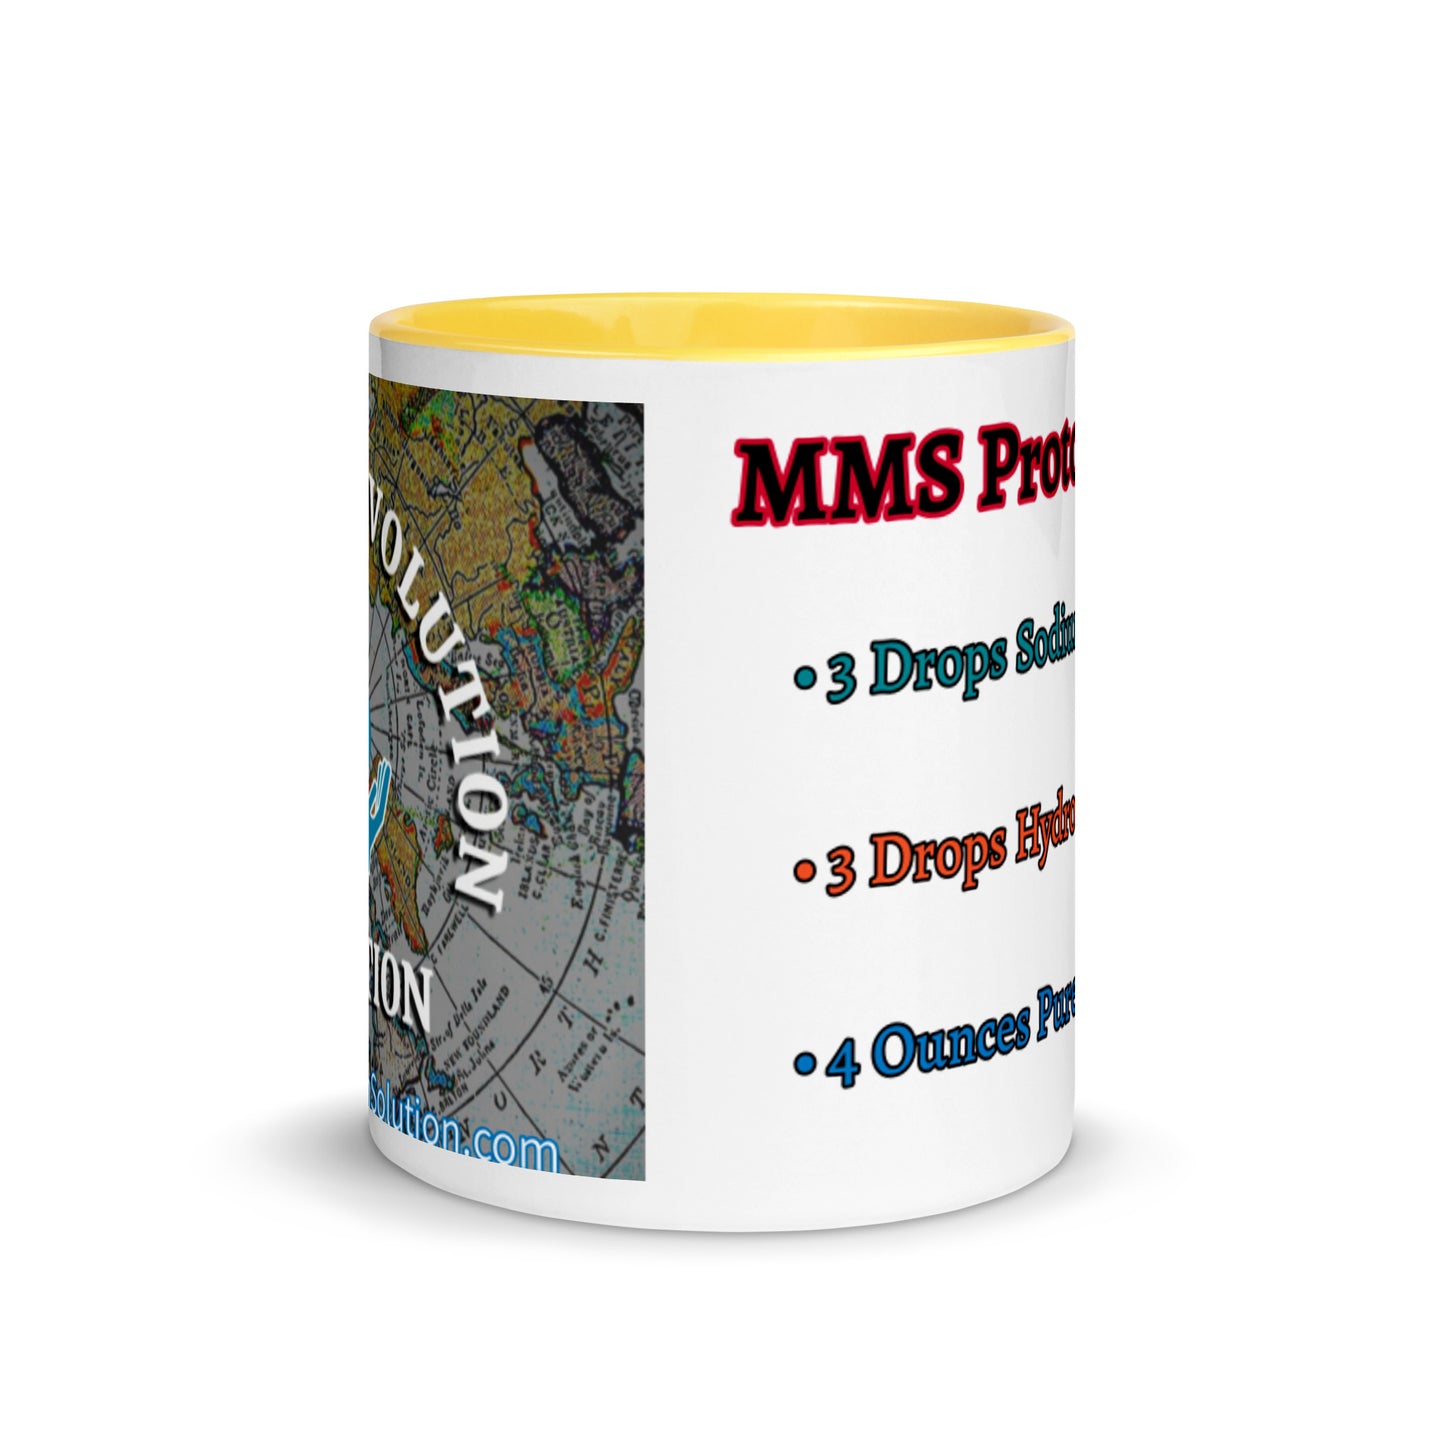 MMS Protocol 1000 Mug